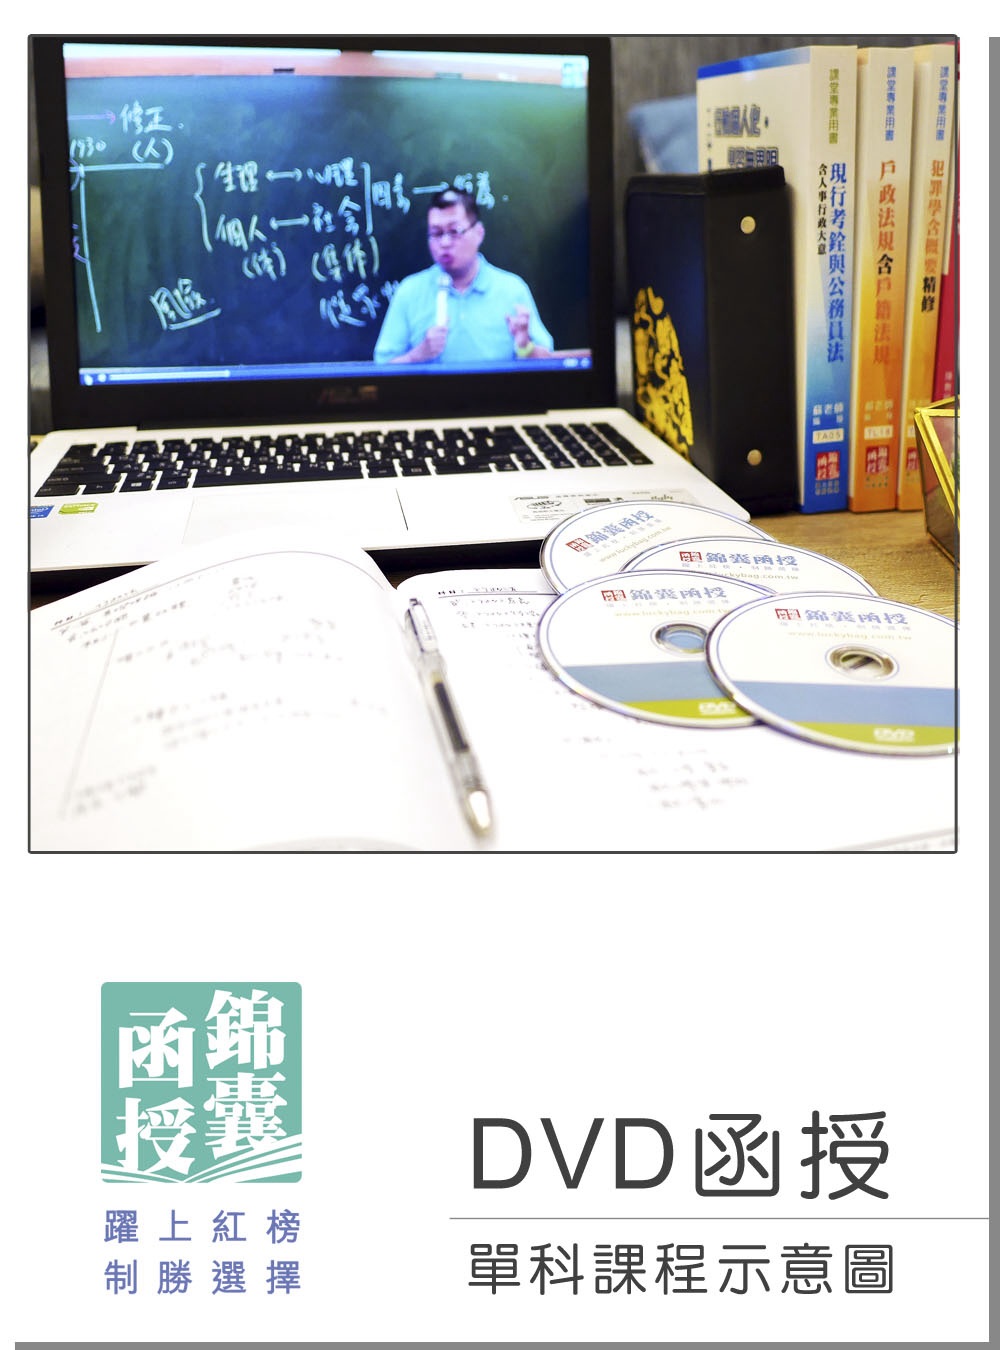 DVD函授 程式設計：單科課程(108版)